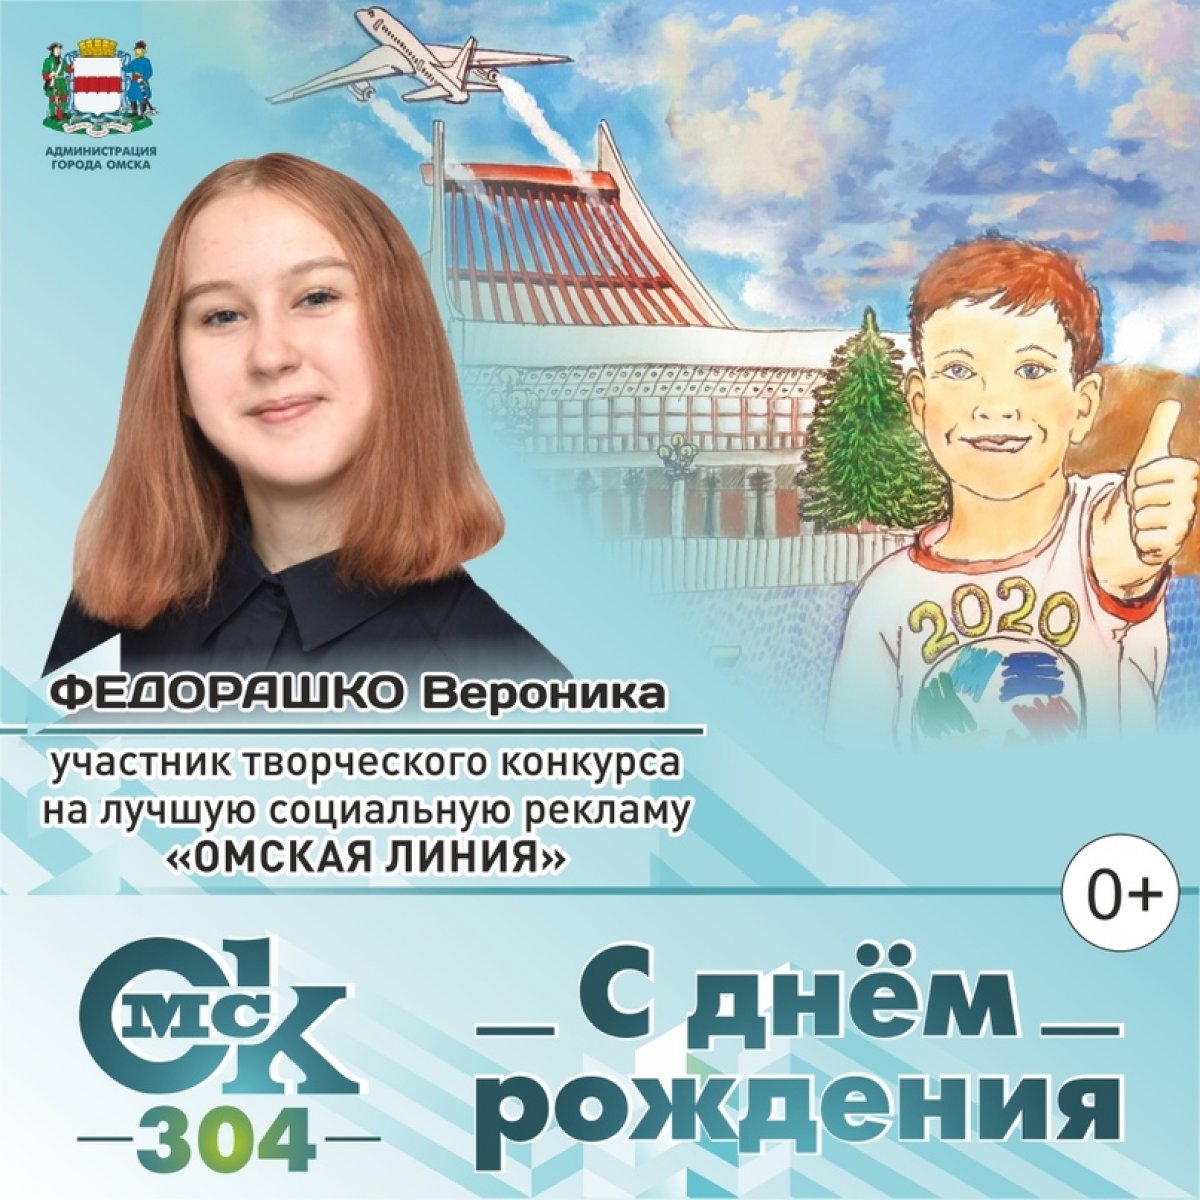 🎉C днем рождения, любимый город Омск! 🎁